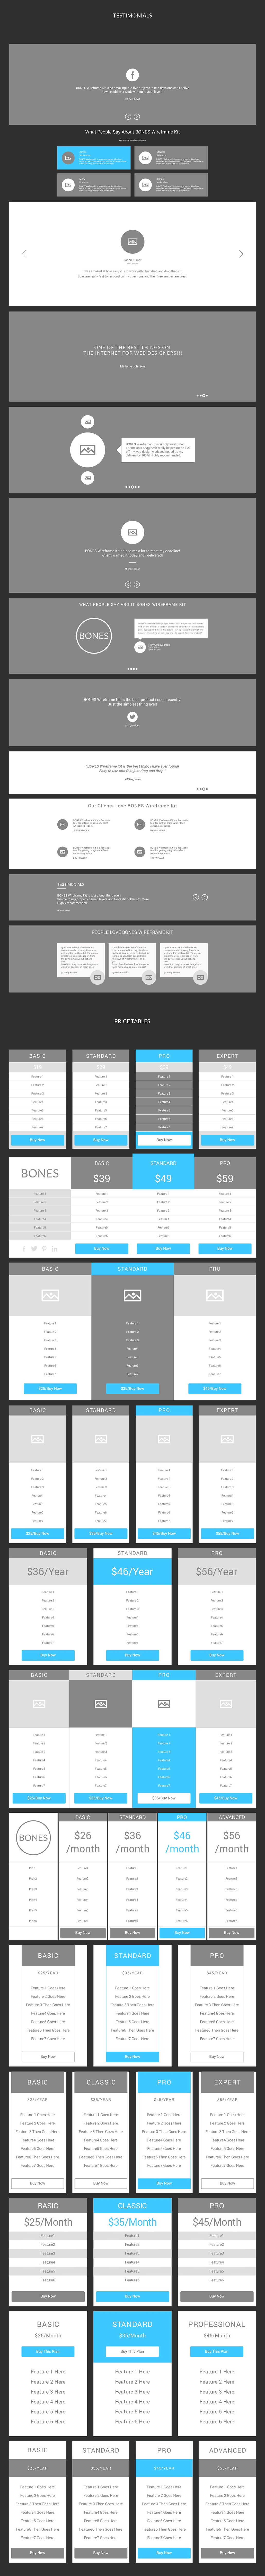 网页设计线框图素材包 Bones Wireframe Kit插图(5)